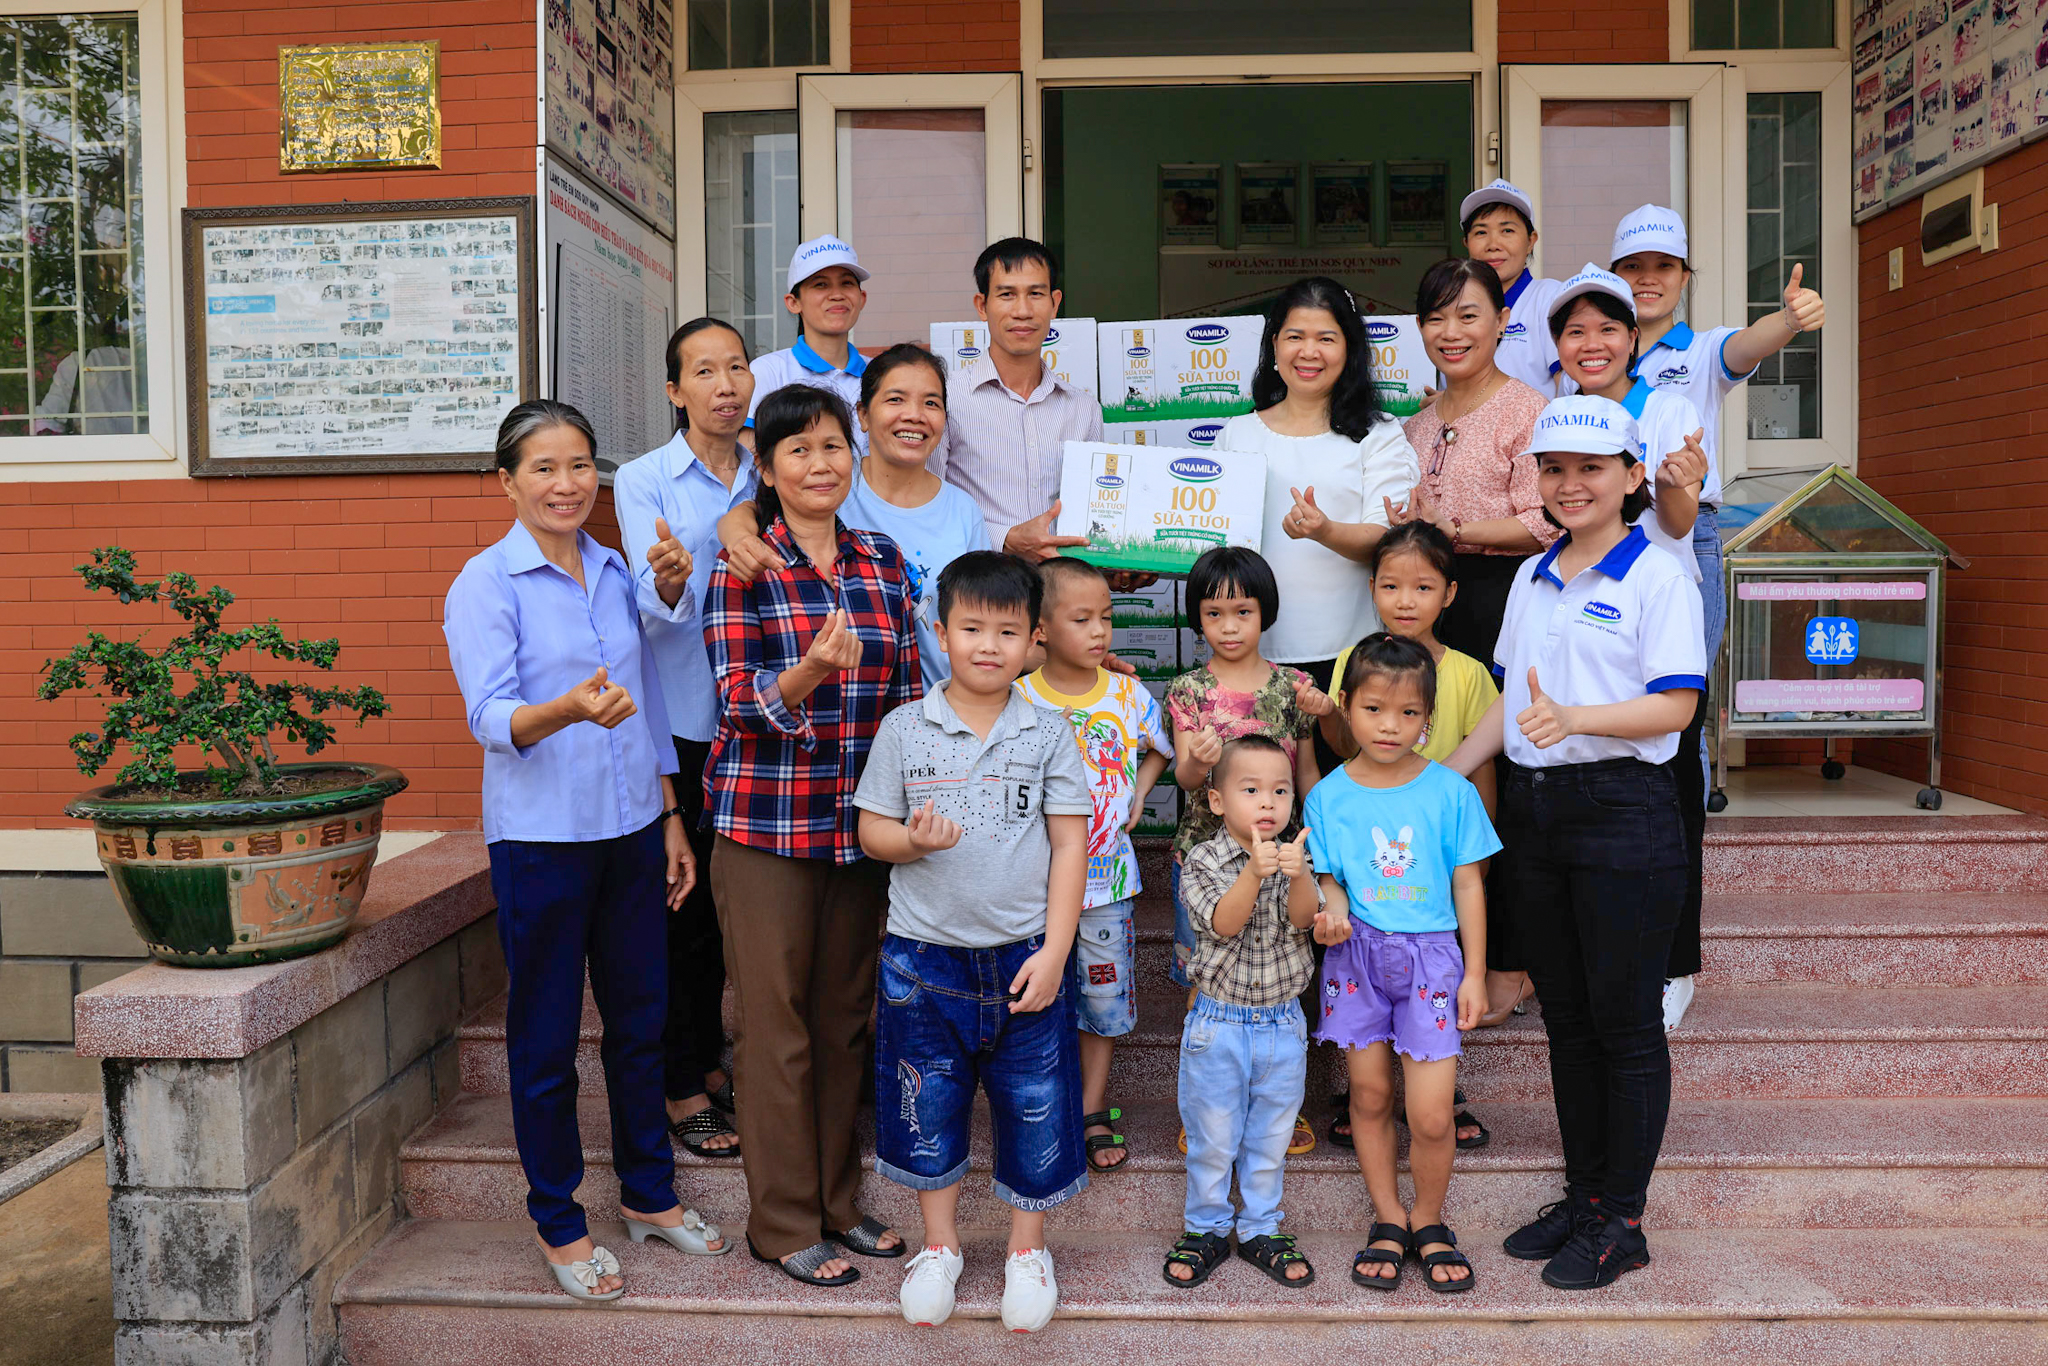 Kinh tế - Quỹ sữa Vươn cao Việt Nam và Vinamilk khởi động hành trình năm thứ 15, mang 1,9 triệu ly sữa đến với trẻ em (Hình 4).